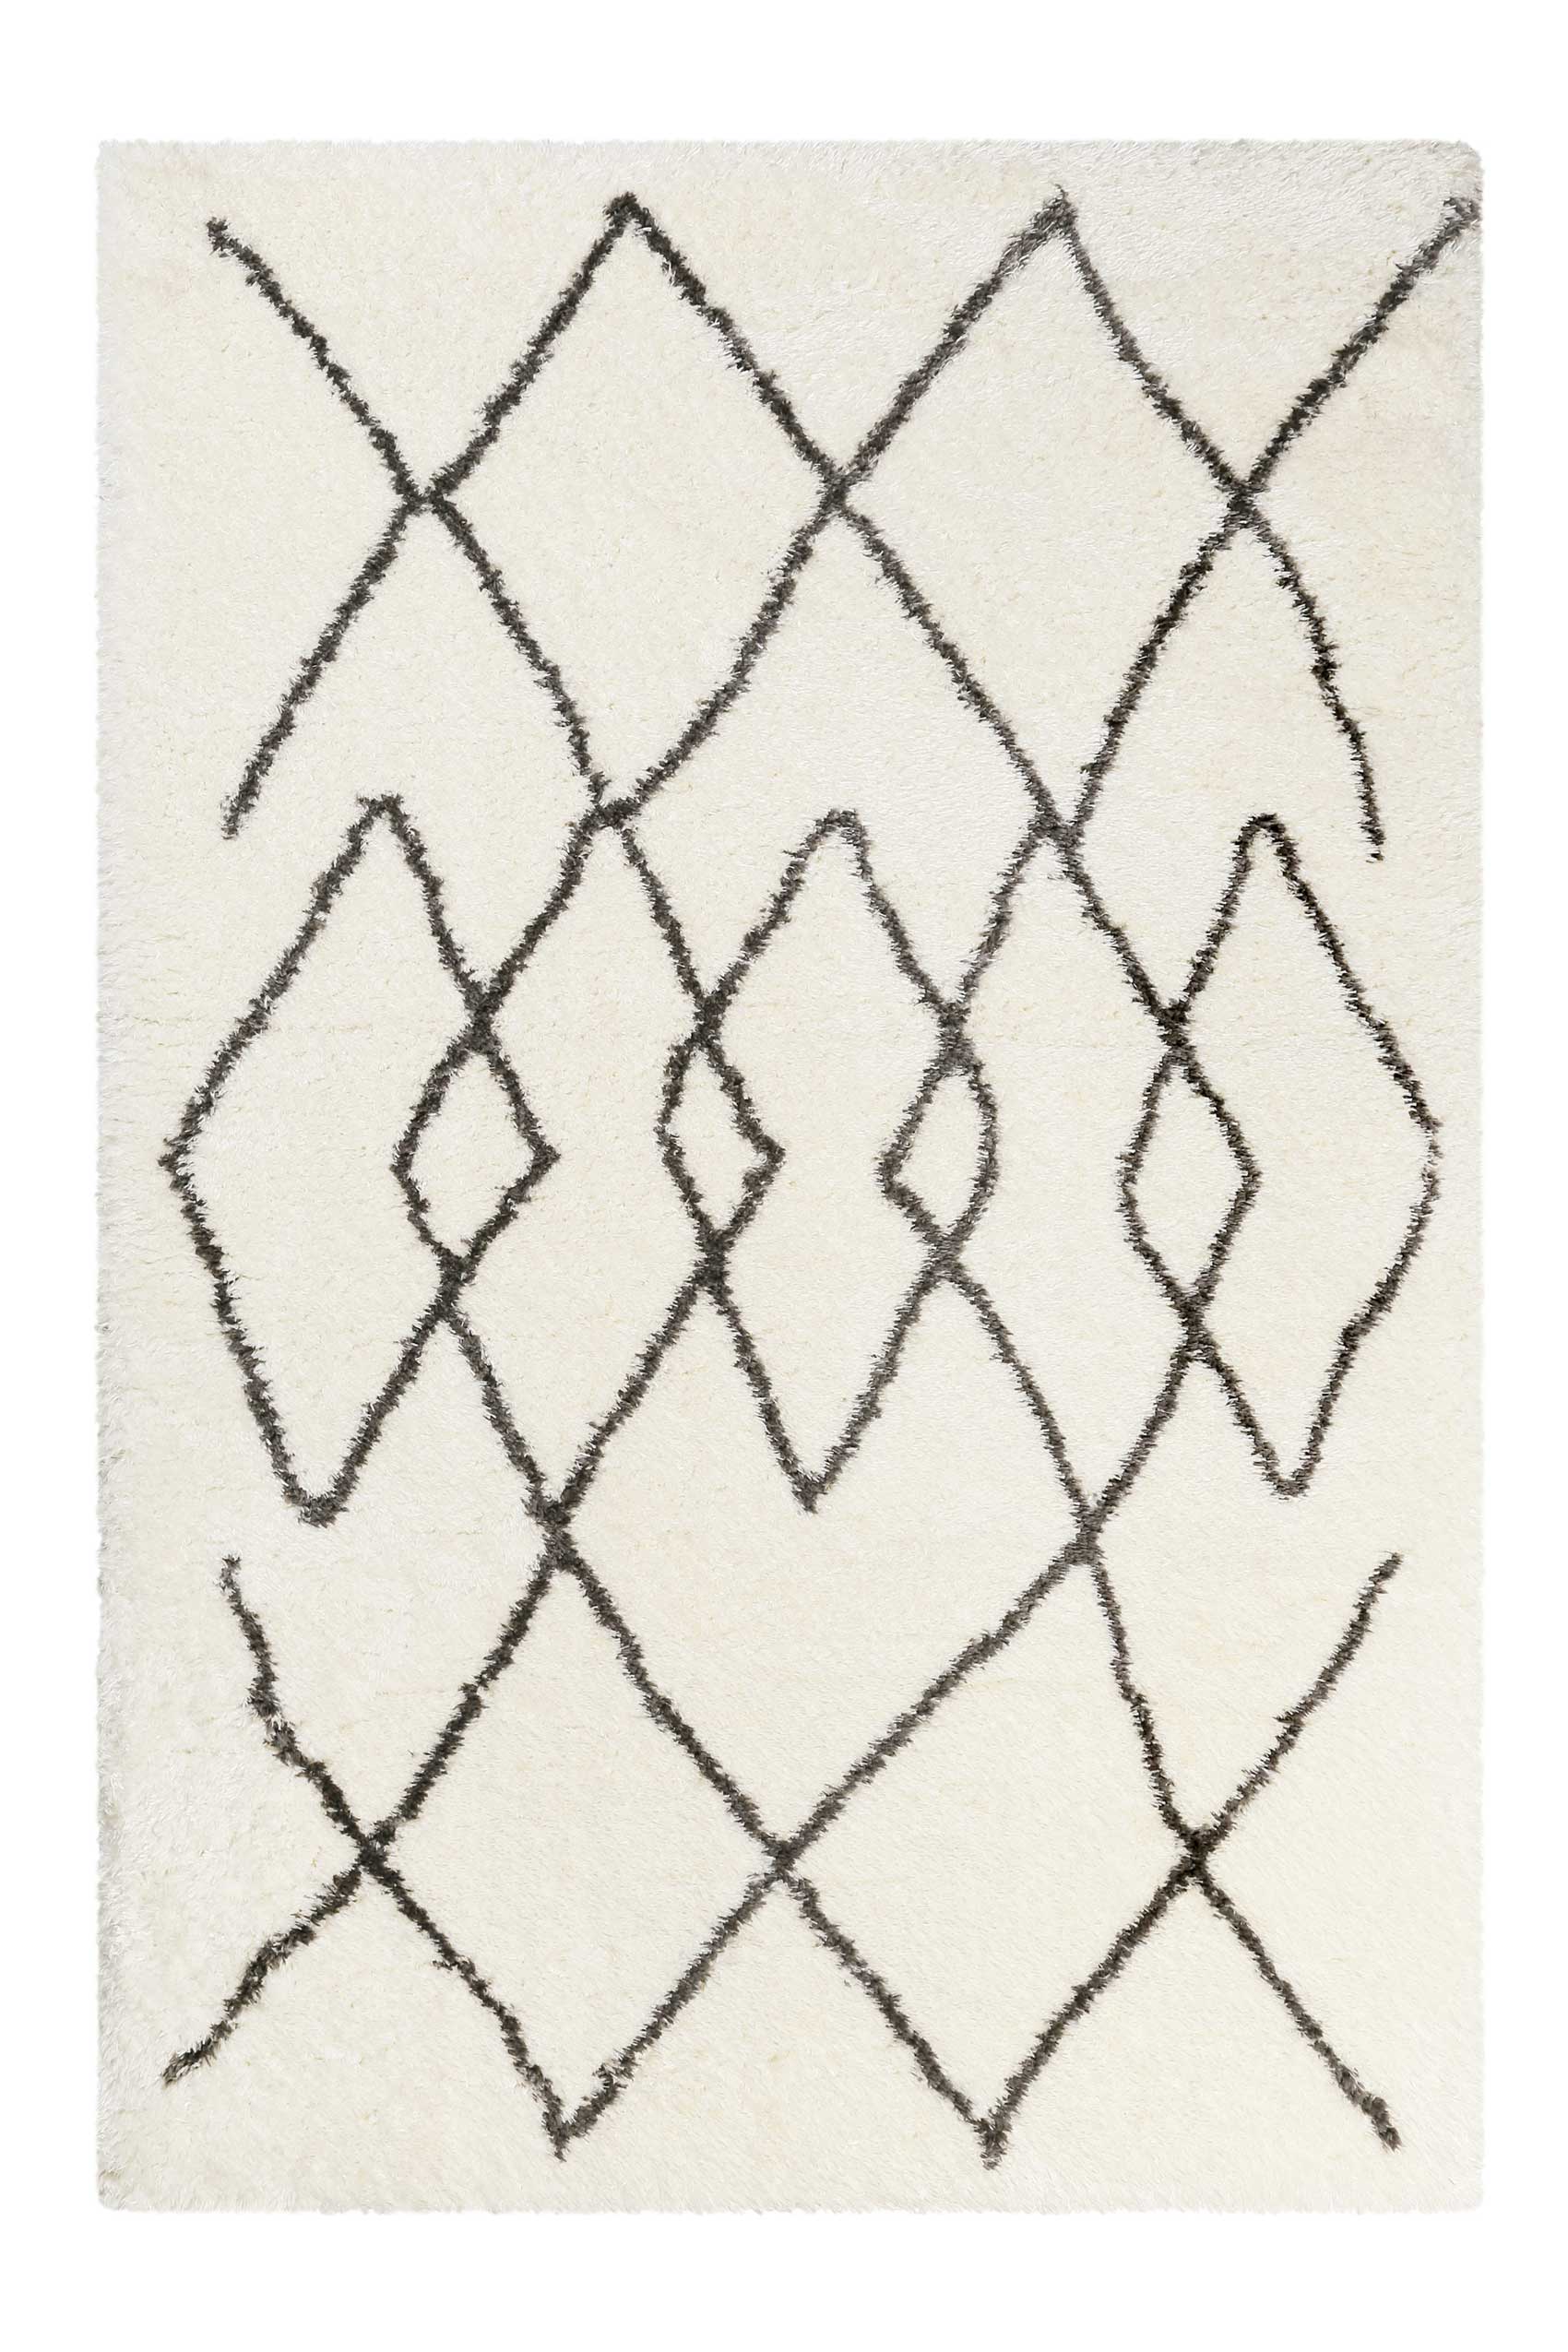 Teppich Creme Weiß Grau sehr flauschig & kuschelig » Afella « WECONhome - Ansicht 1